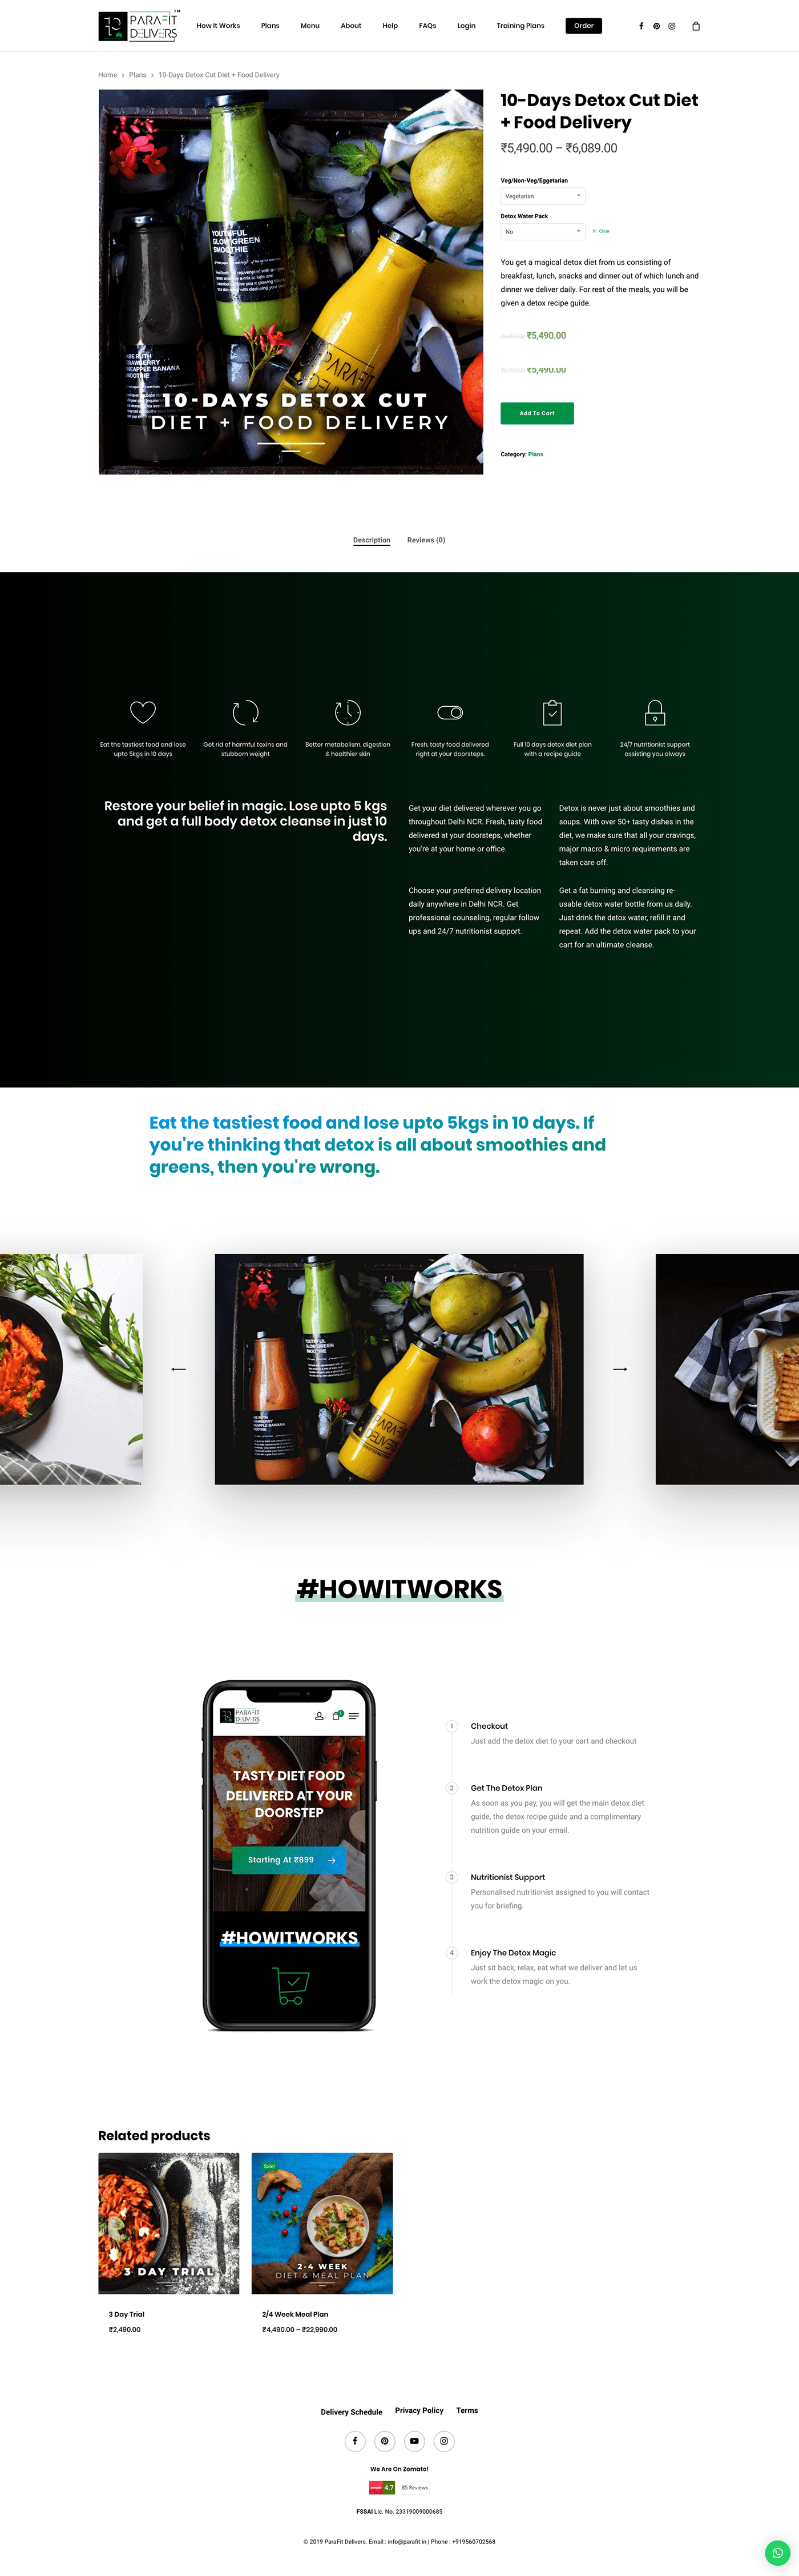 graphic design  Website Design ui design UX design Web Design  Website website branding Food Website delivery website Cafe Website